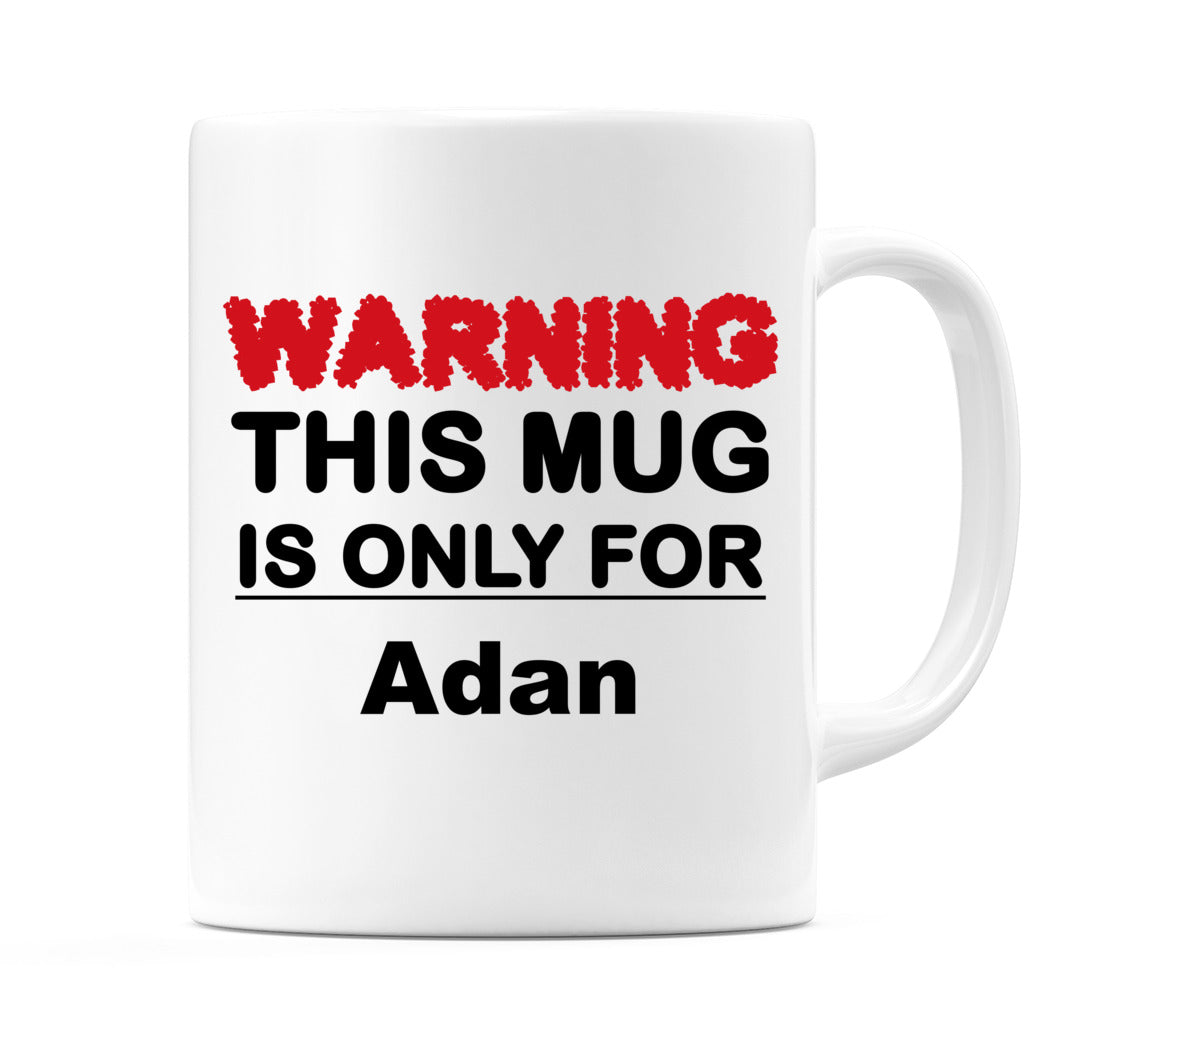 Warning This Mug is ONLY for Adan Mug